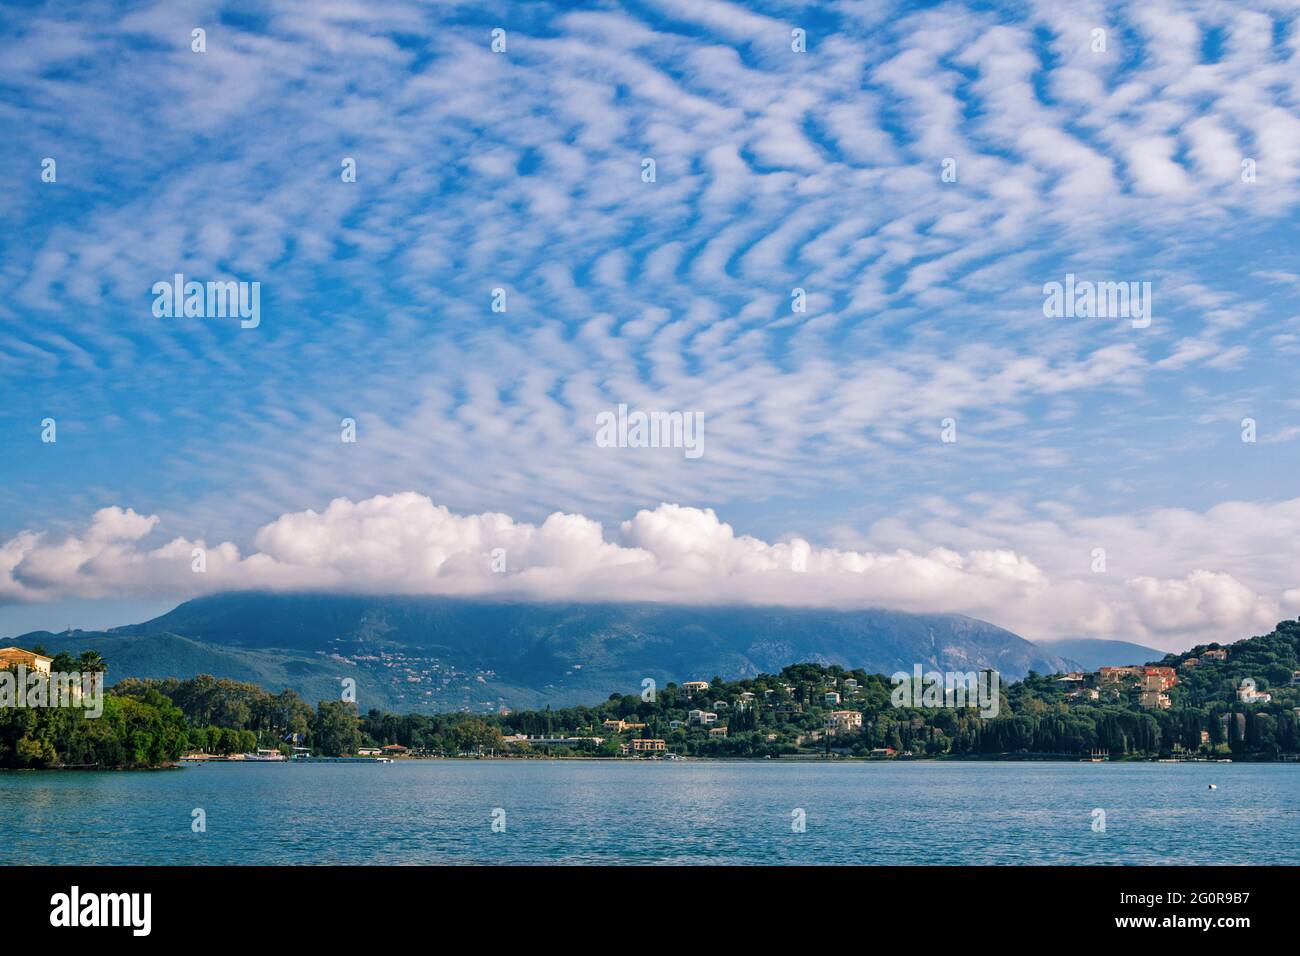 Splendido paesaggio con baia di mare, cielo blu e nuvole bianche, montagne all'orizzonte. Isola di Corfù, Grecia. Foto Stock